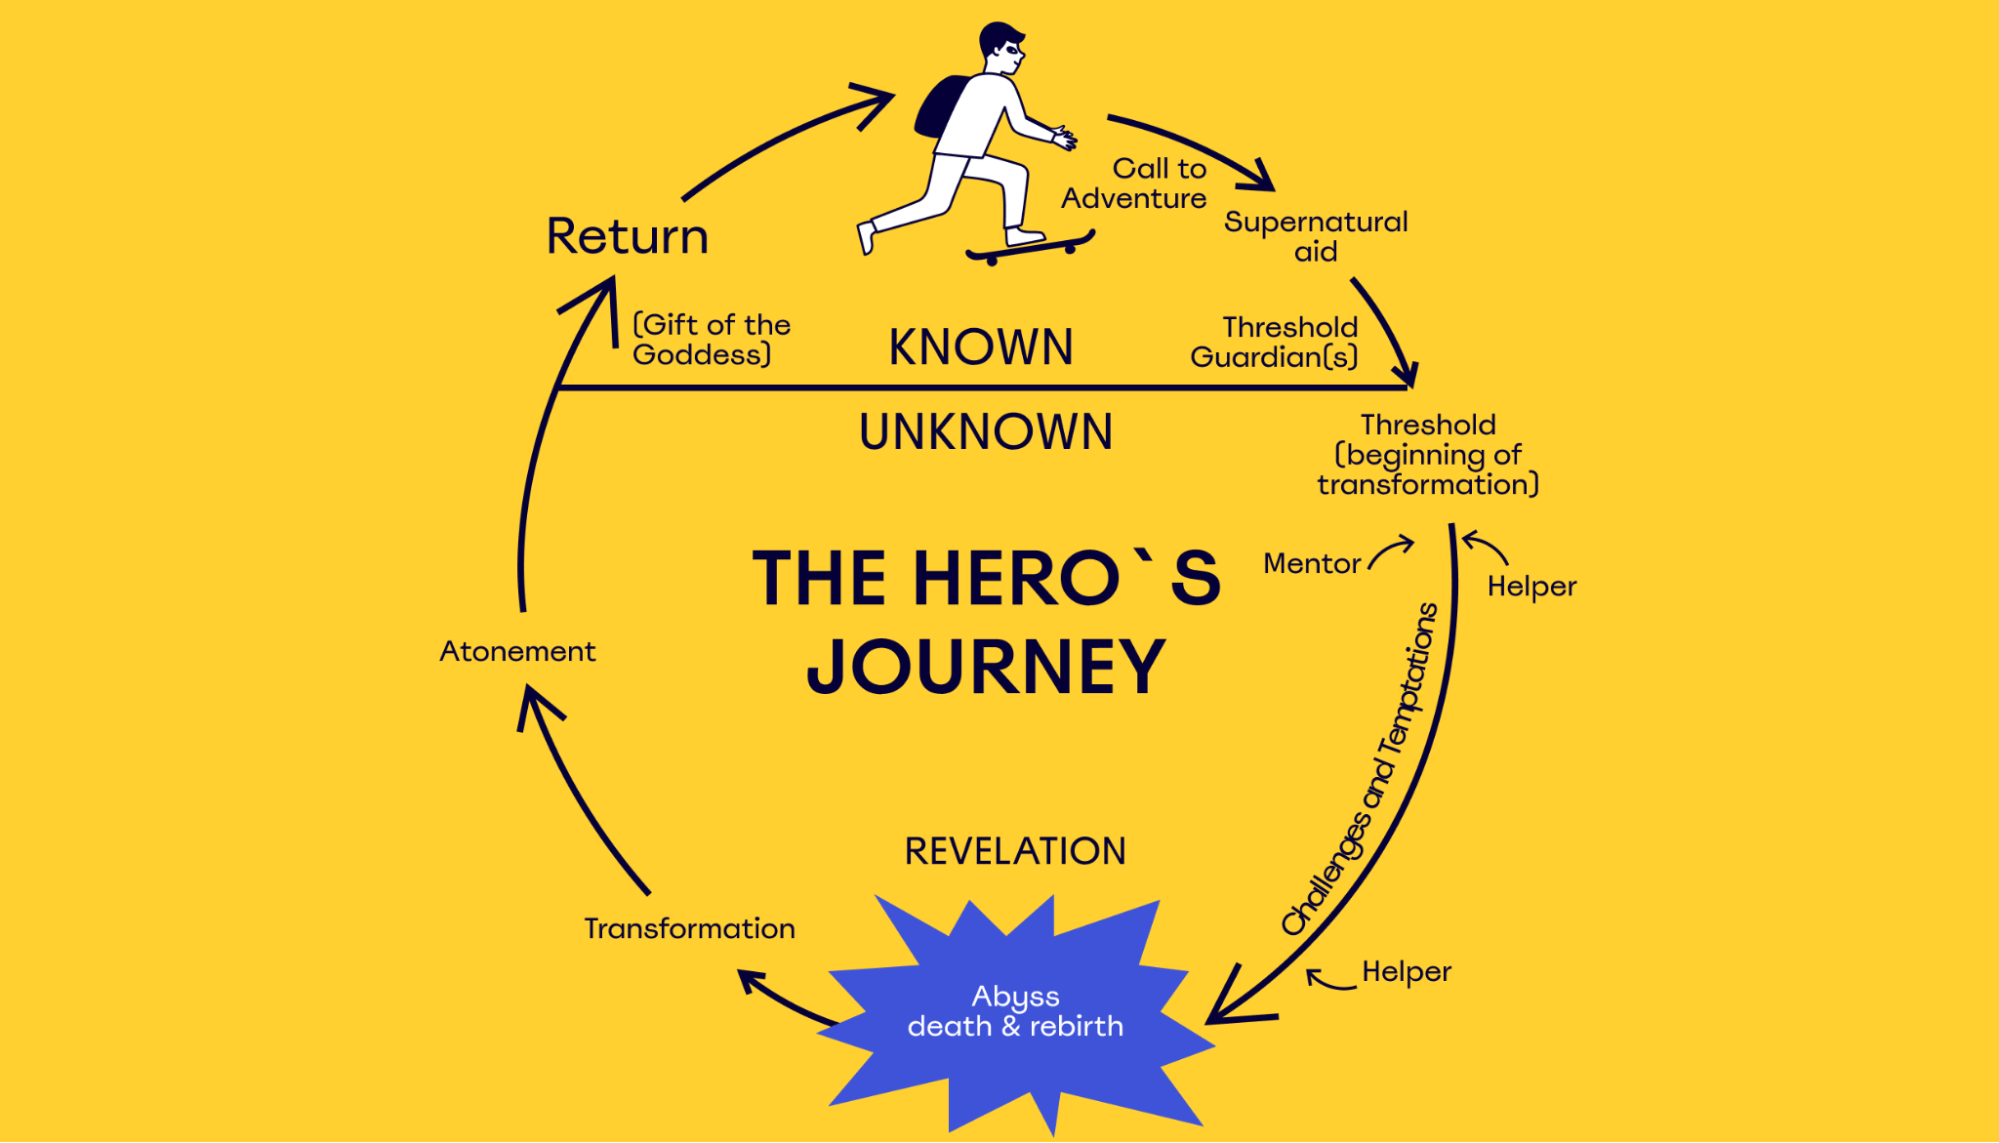 the hero’s journey or monomyth